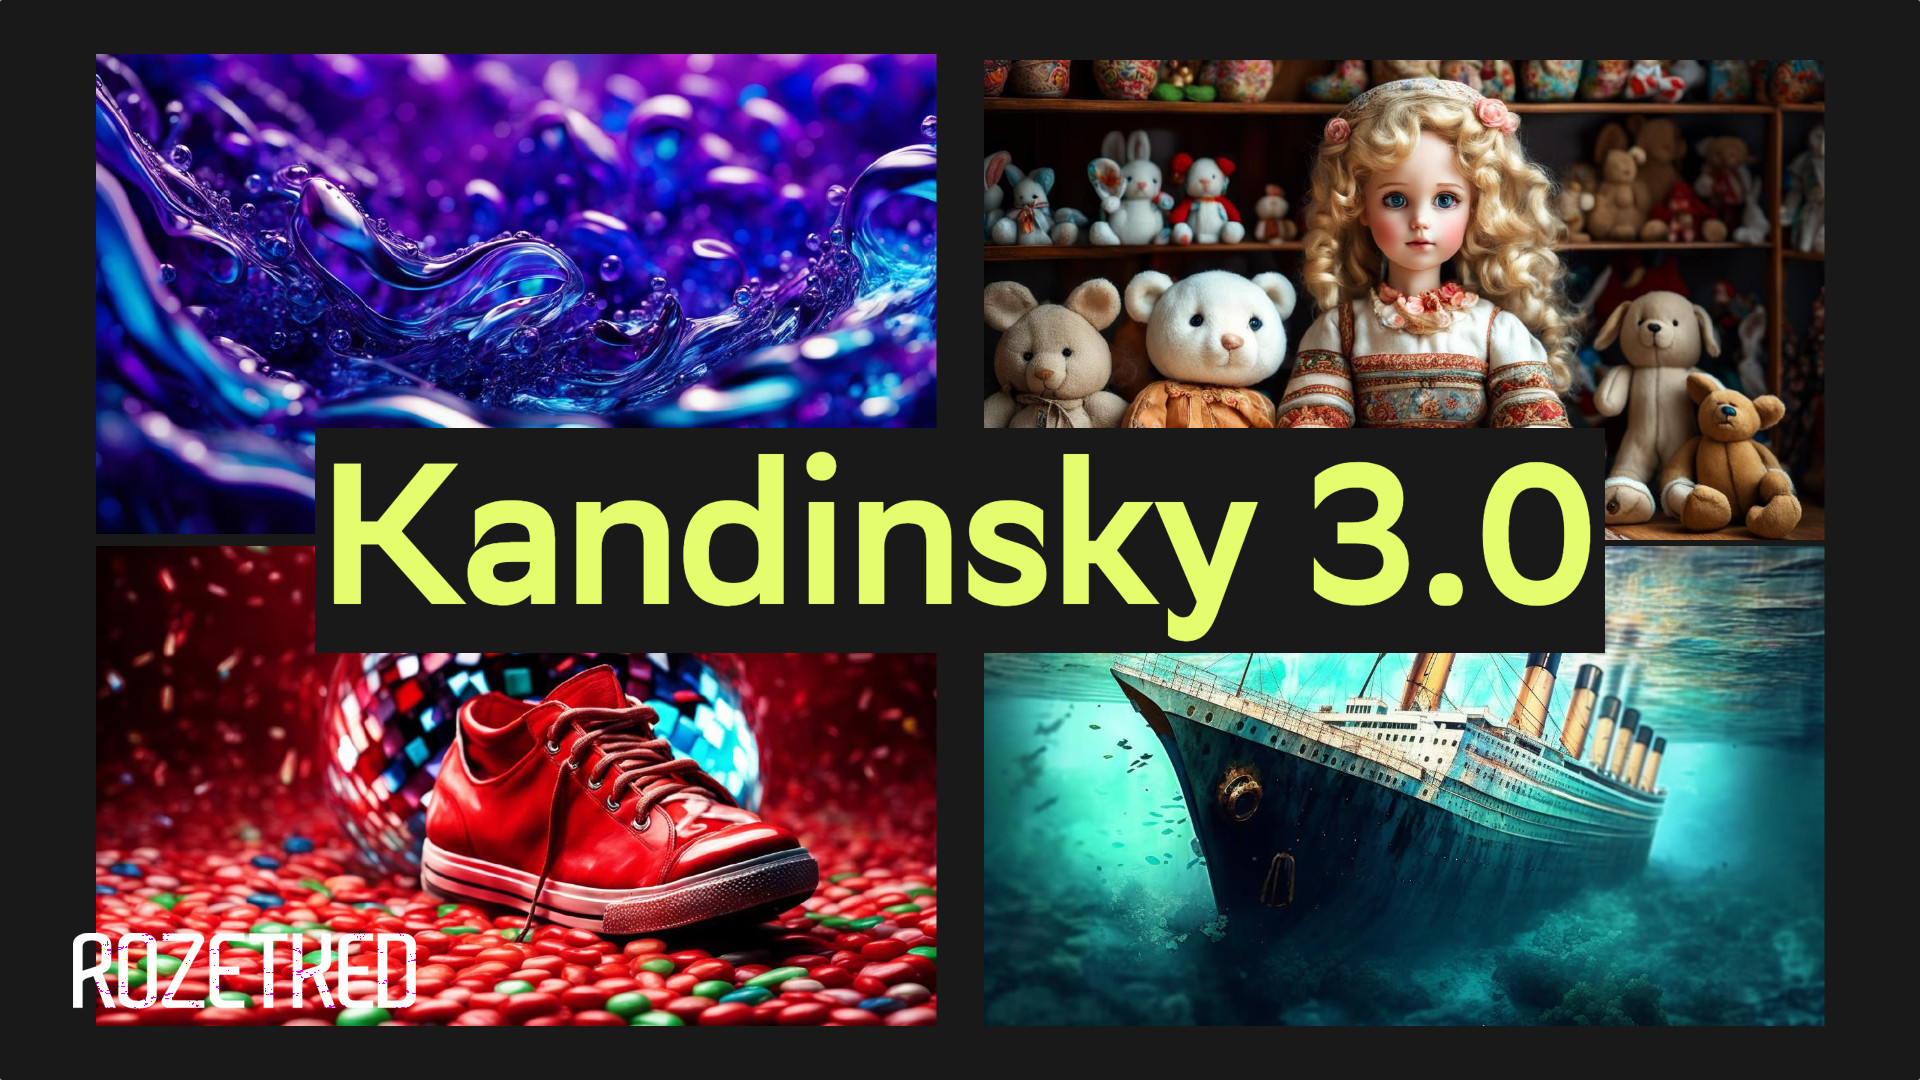 «Сбер» представил новую версию нейромодели для генерации изображений — Kandinsky 3.0